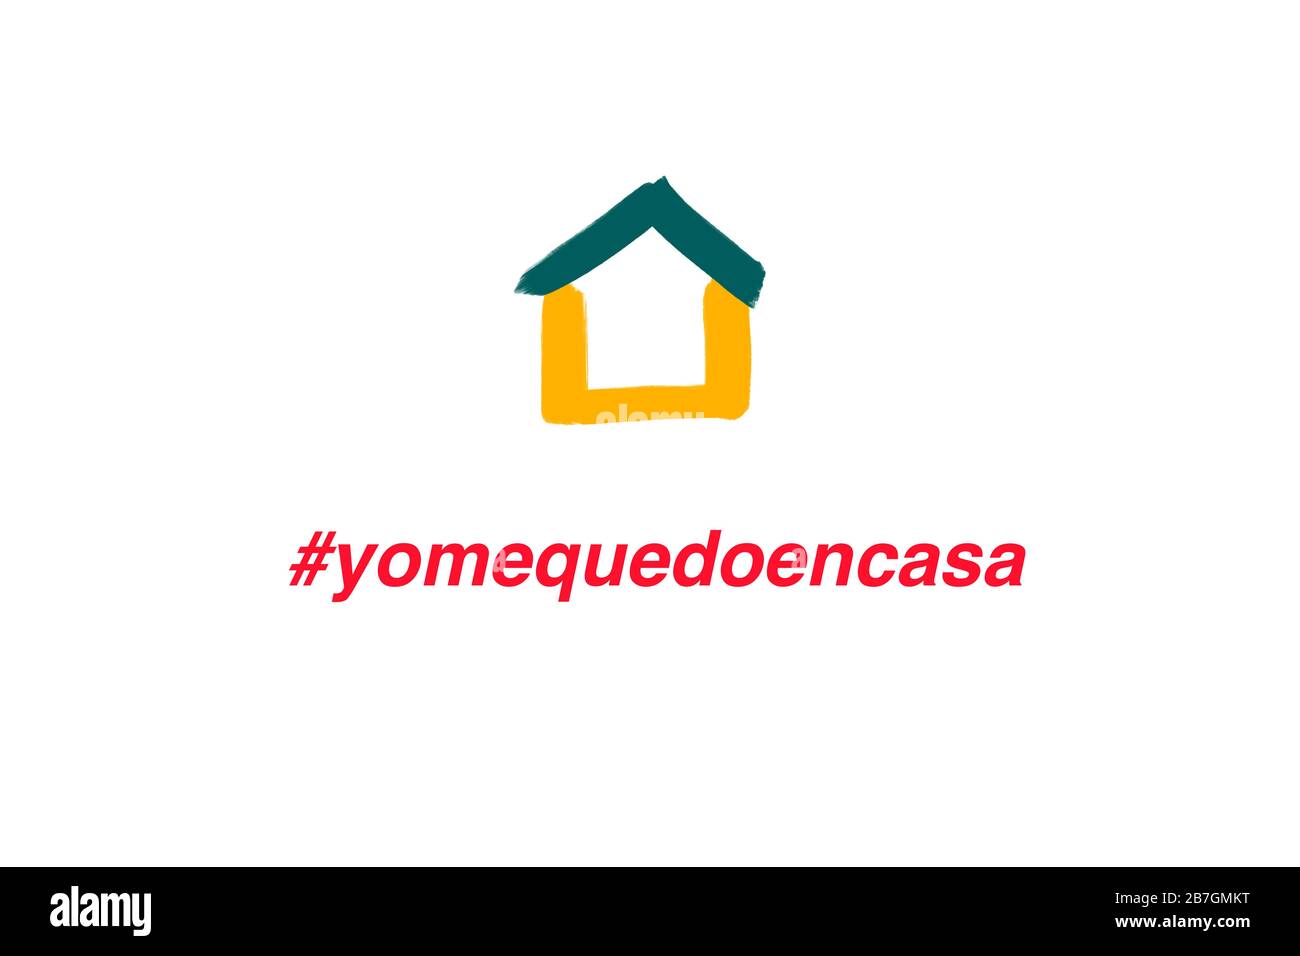 Spanische Übersetzung Ich BLEIBE ZU HAUSE und hashtag und Haus auf weißem Hintergrund. Spanien verlängert die Notfall-Quarantänemaßnahmen landesweit und rät den Menschen dazu Stockfoto